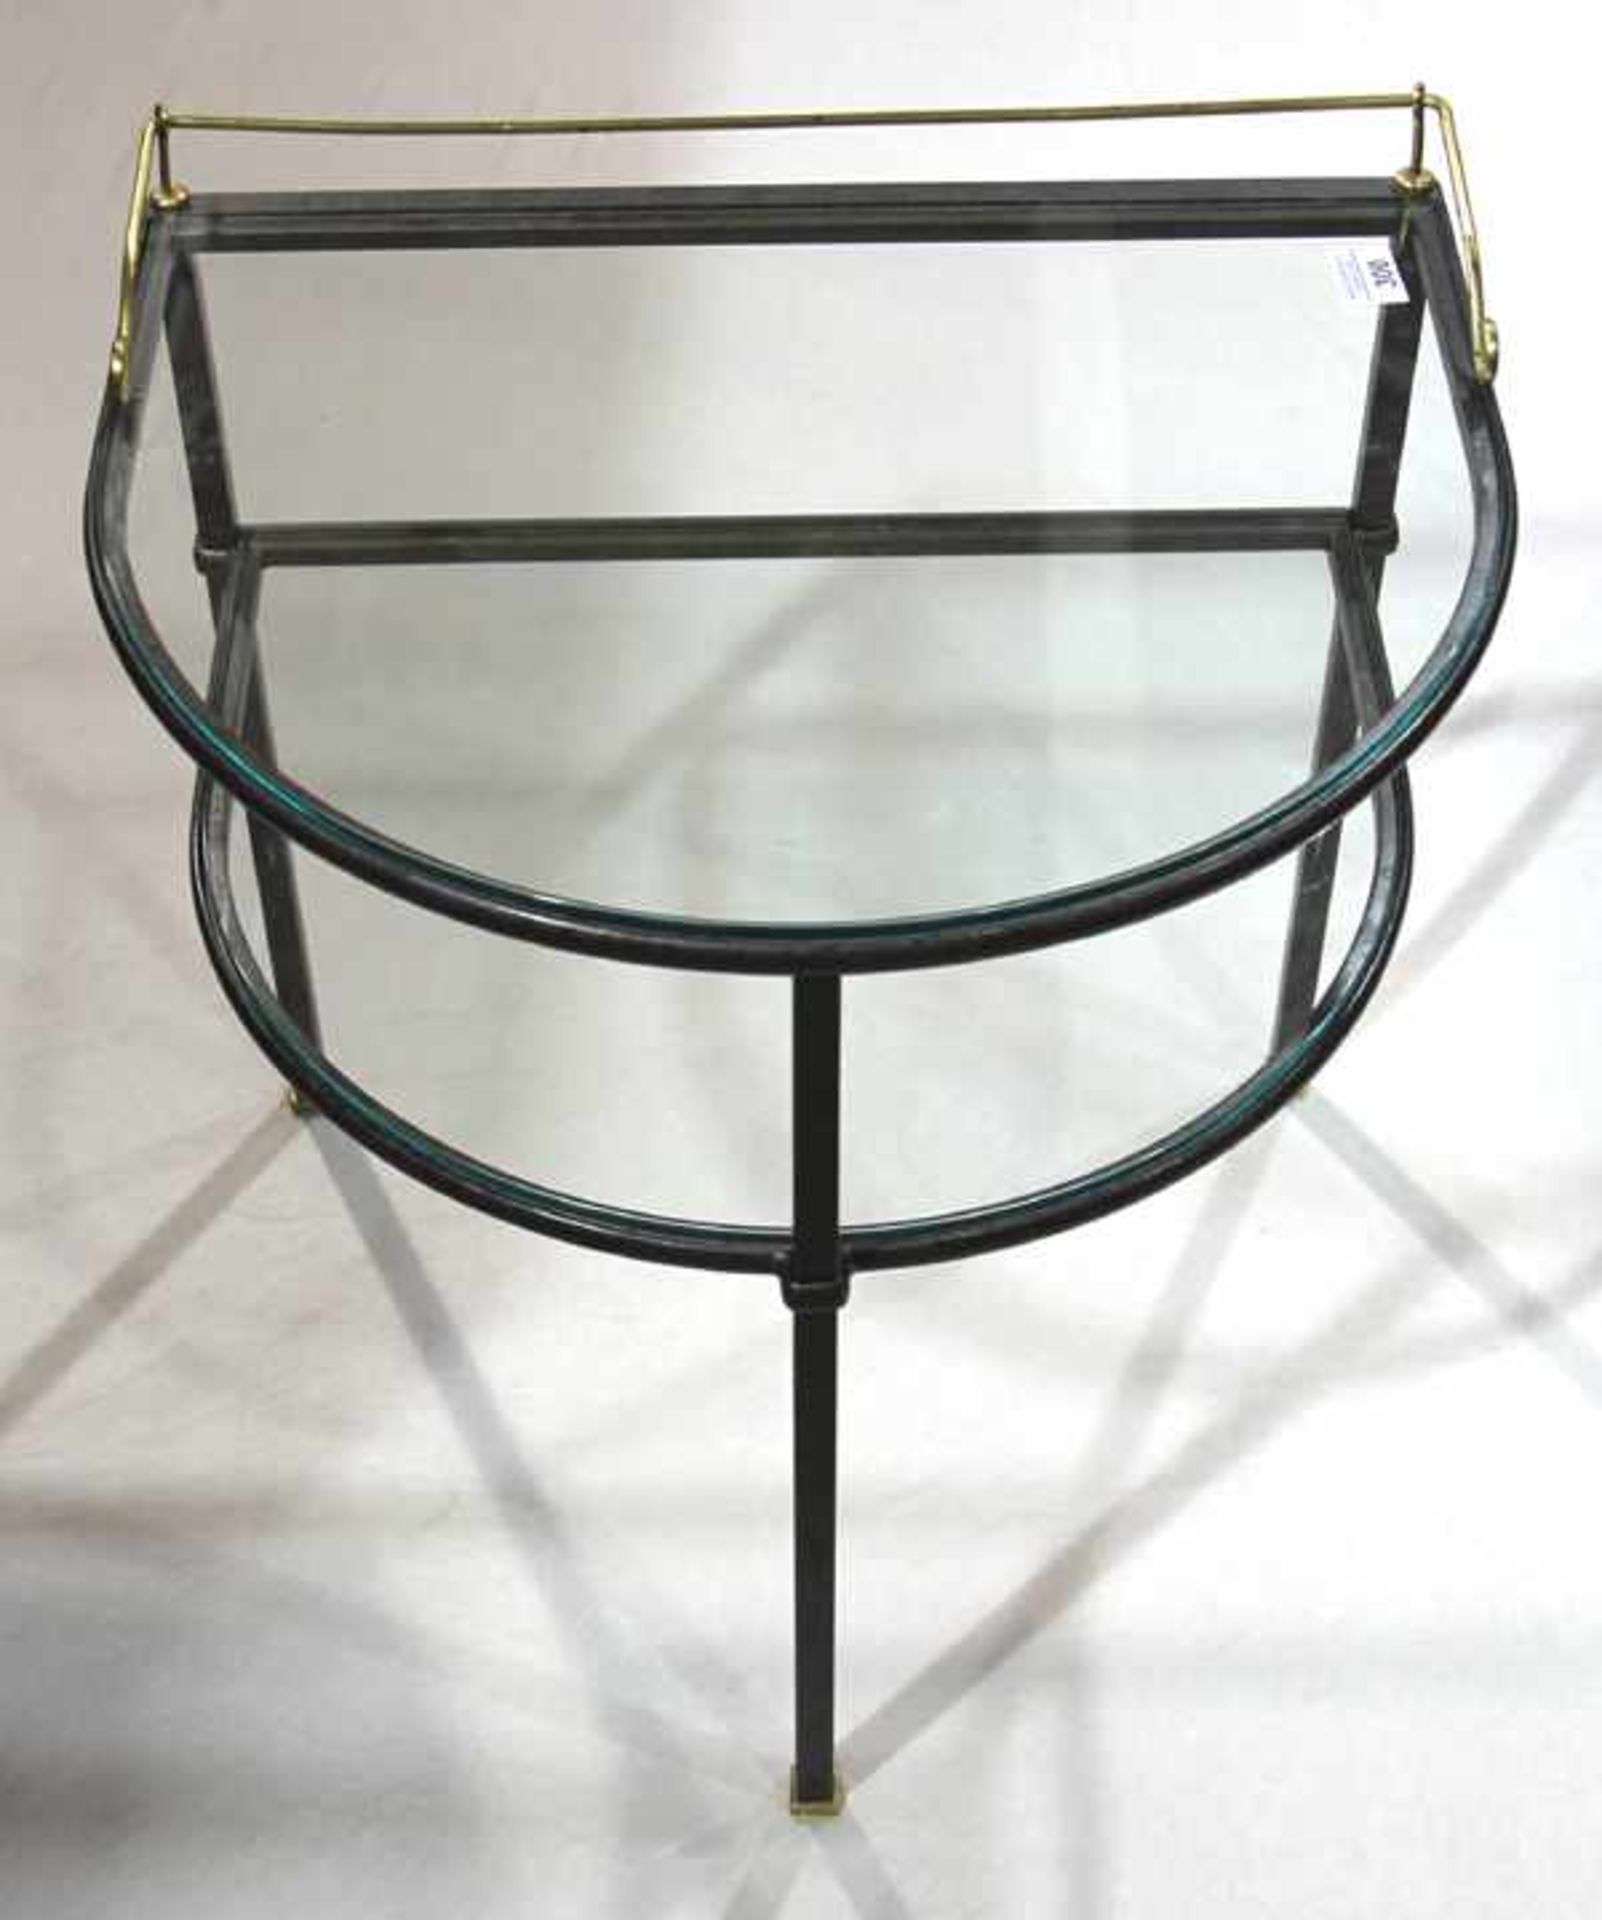 Wandtisch in halbrunder Form mit Ablageboden, Metall/Messing/Glas, H 52 cm, B 50 cm, T 41 cm,